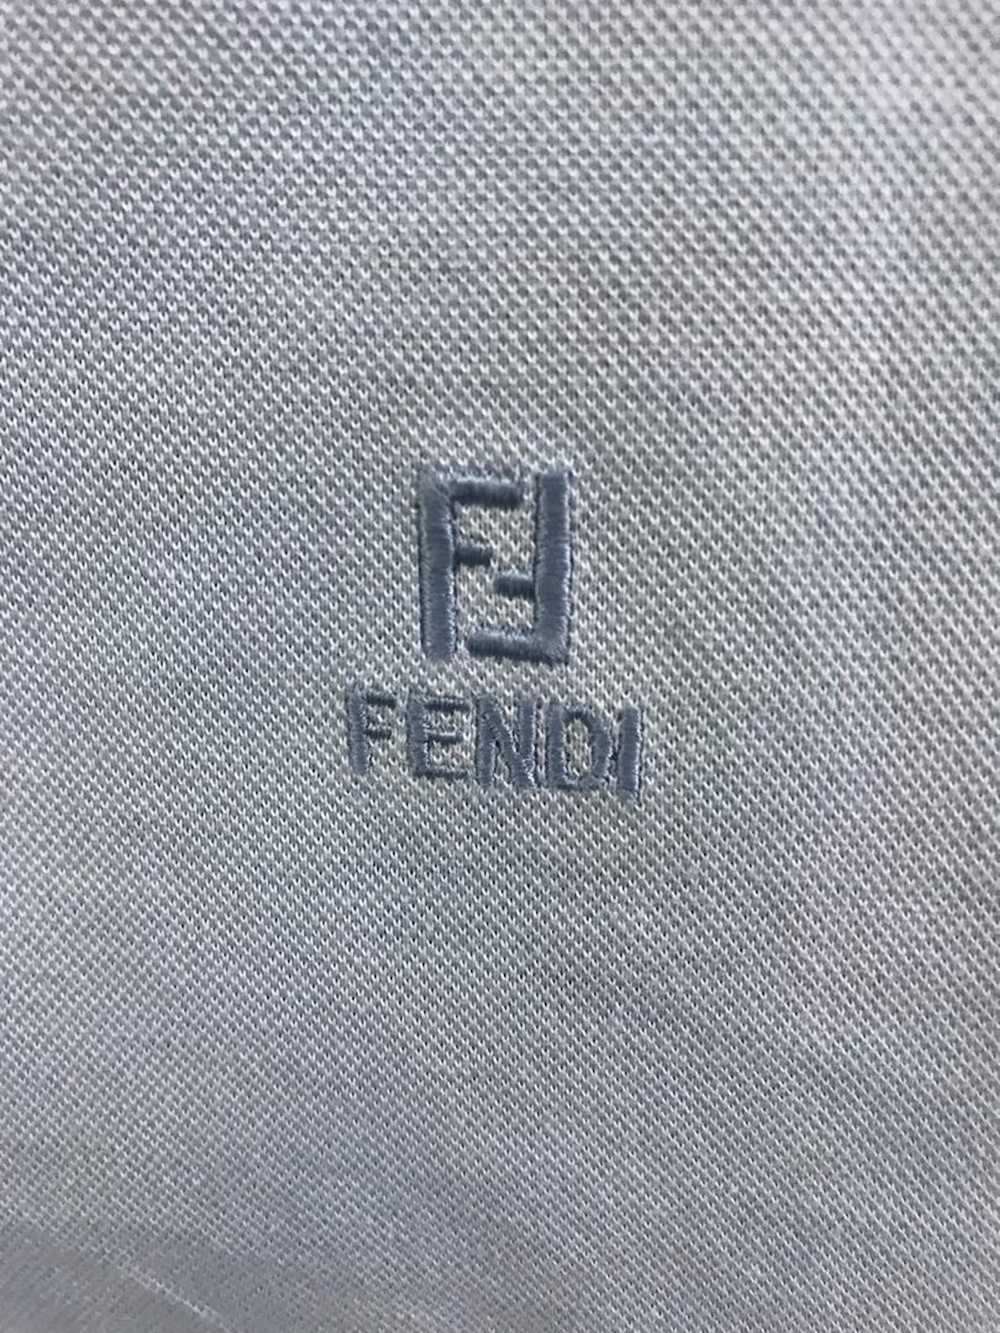 Fendi Fendi Shirt - image 3